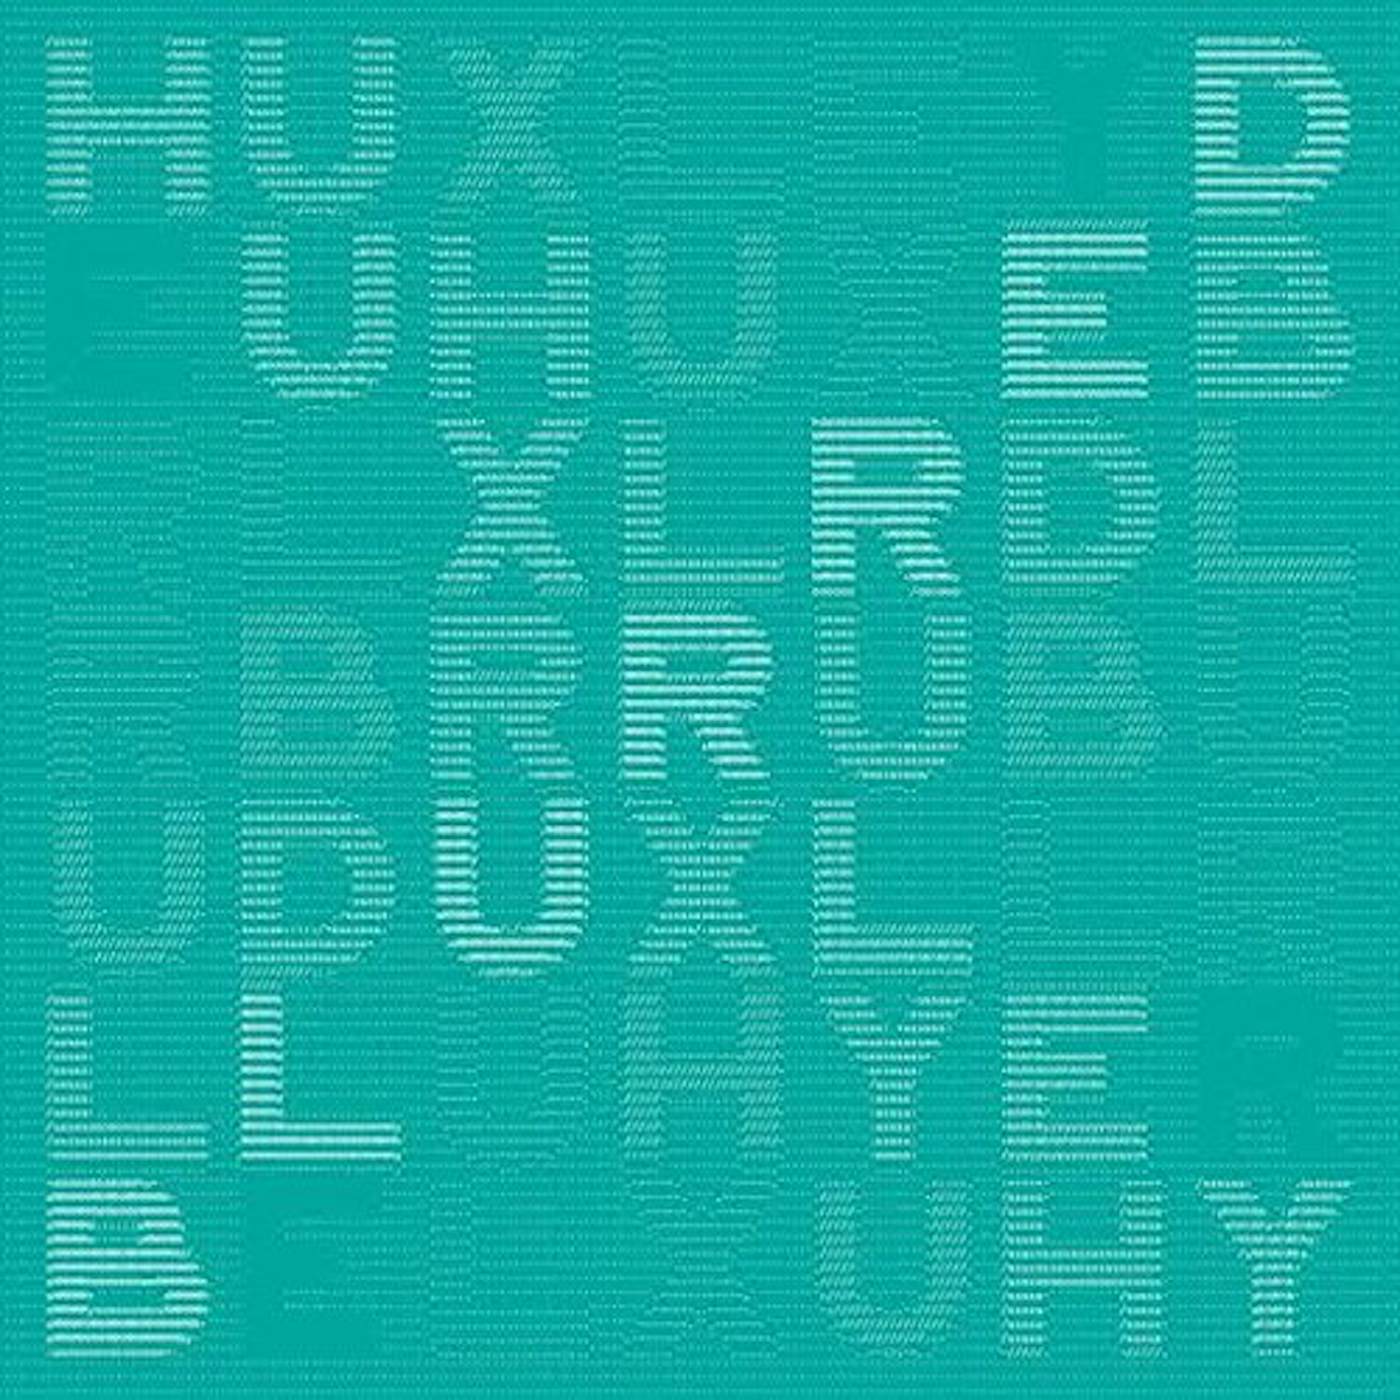 Huxley BLURRED CD